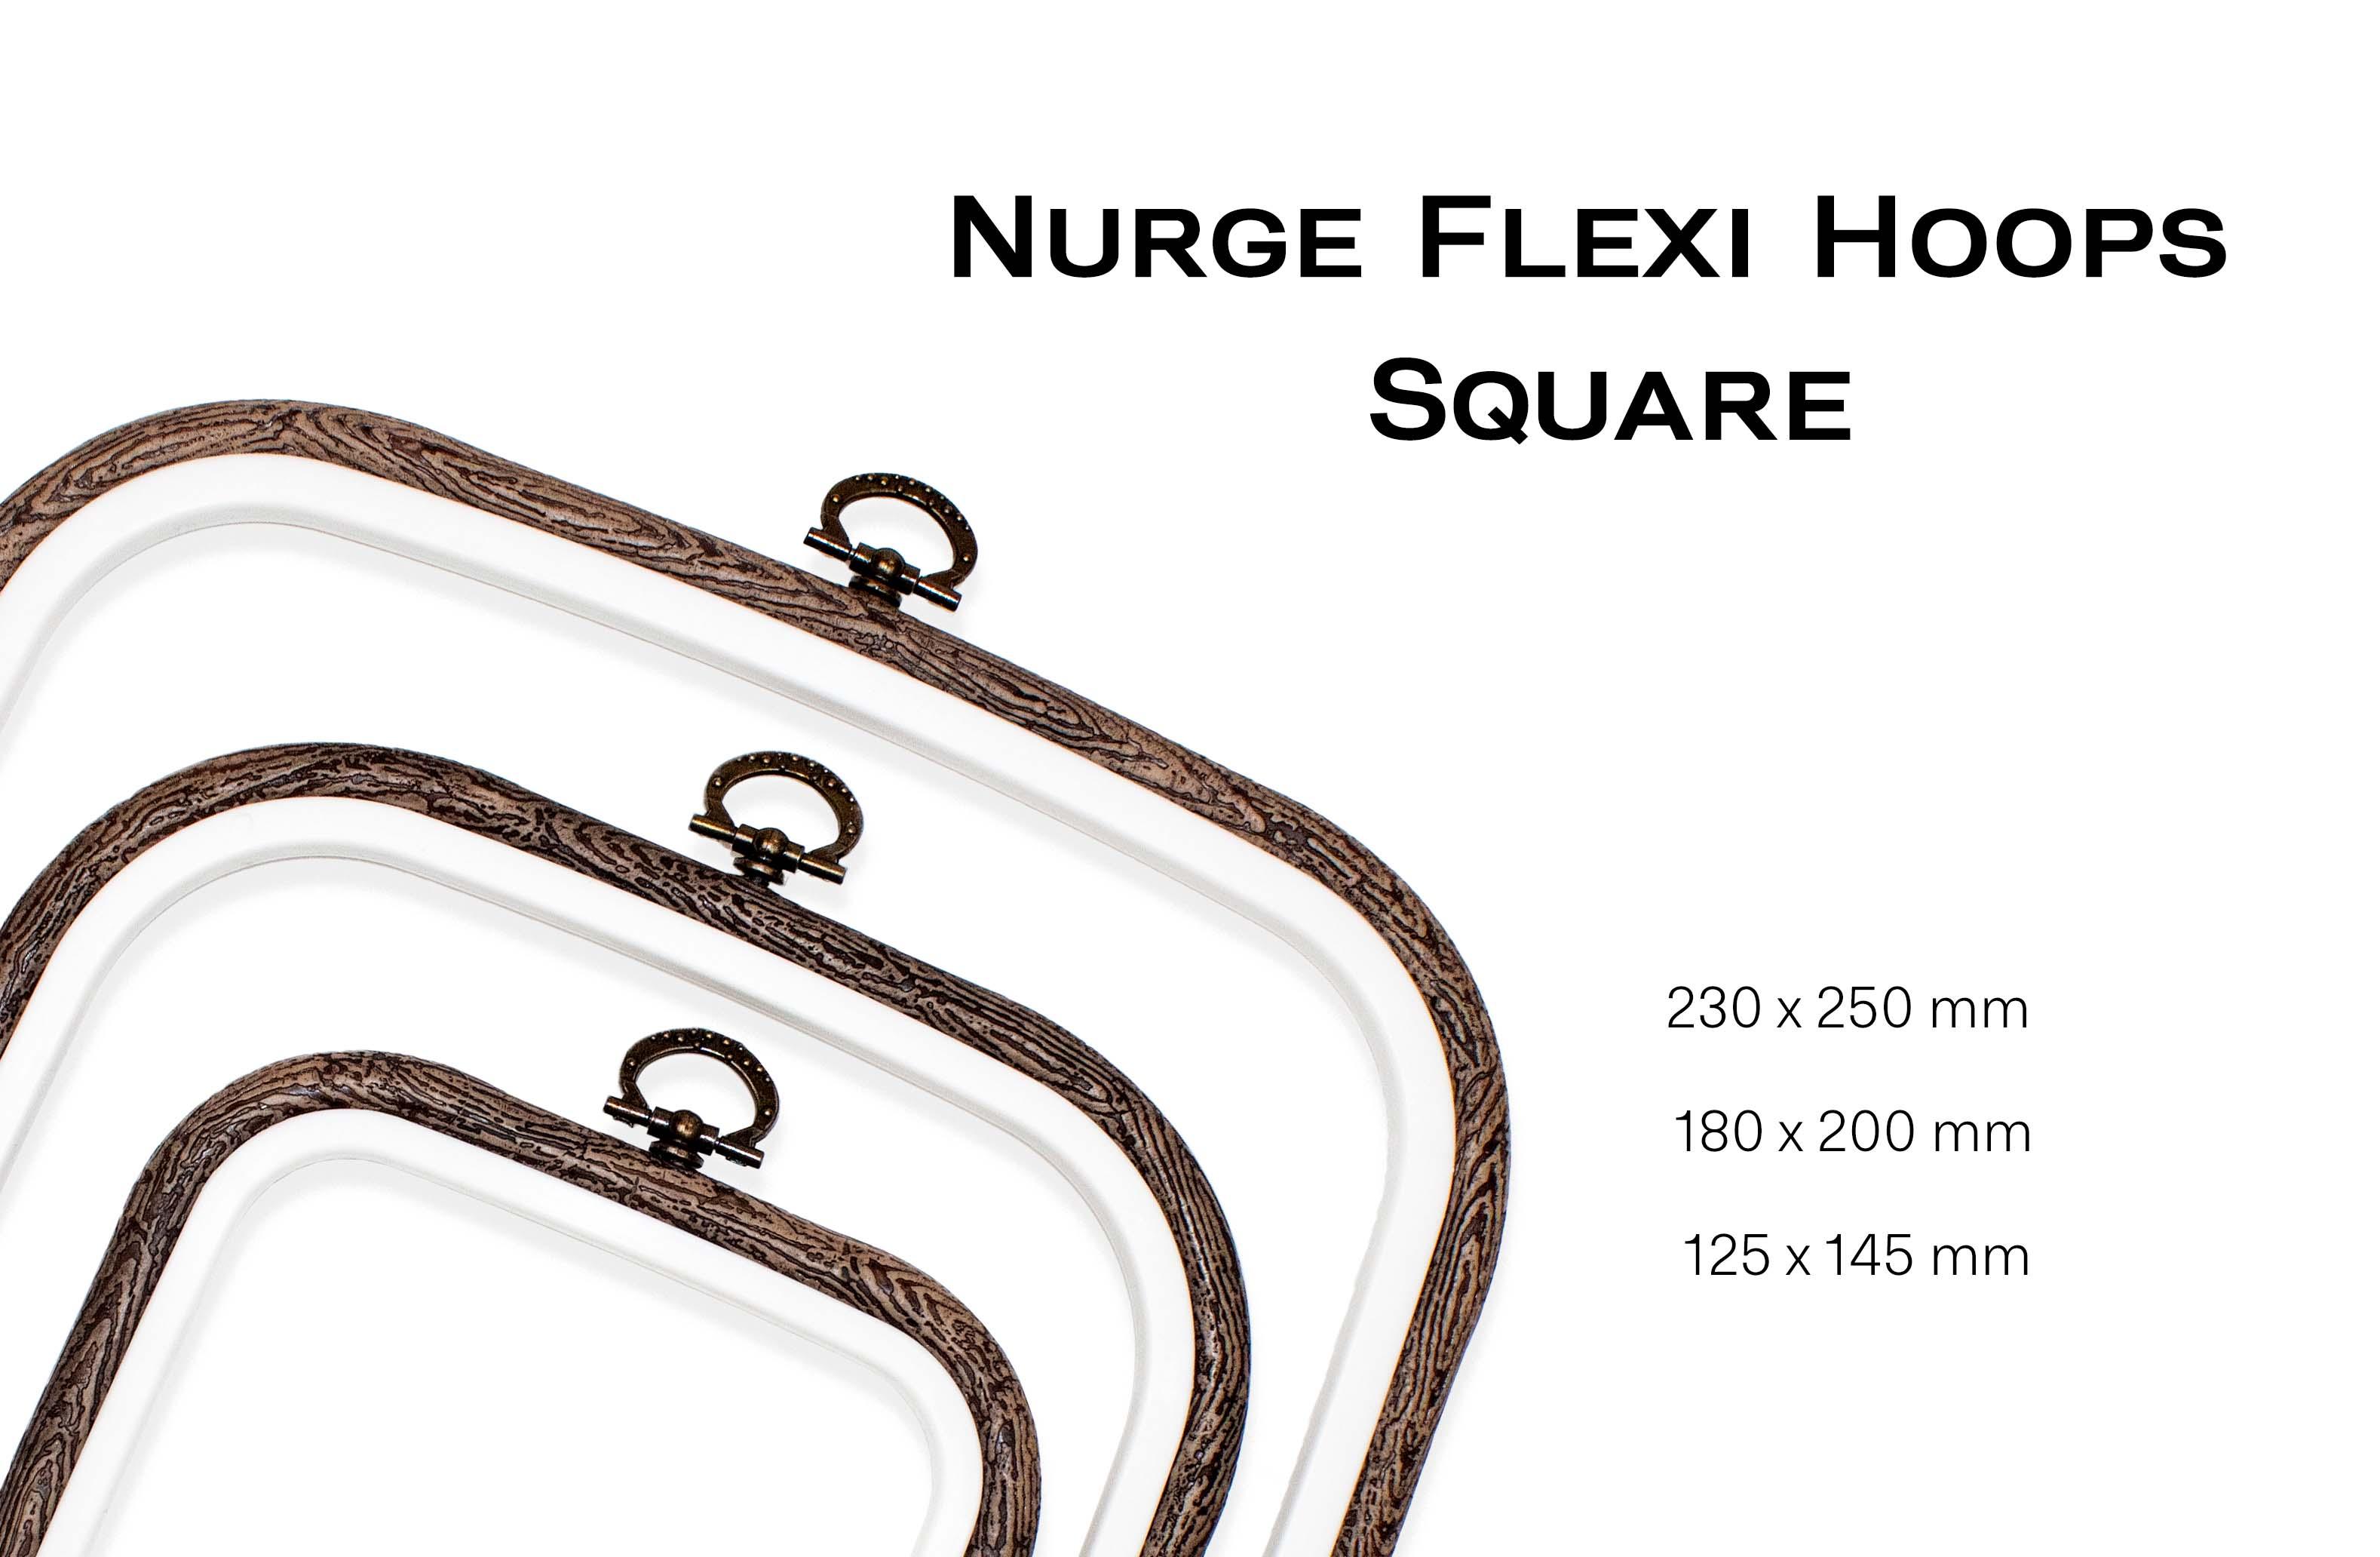 Sand Square Embroidery Hoop - Nurge Flexible Cross Stitch Hoop - Luca-S Hoops